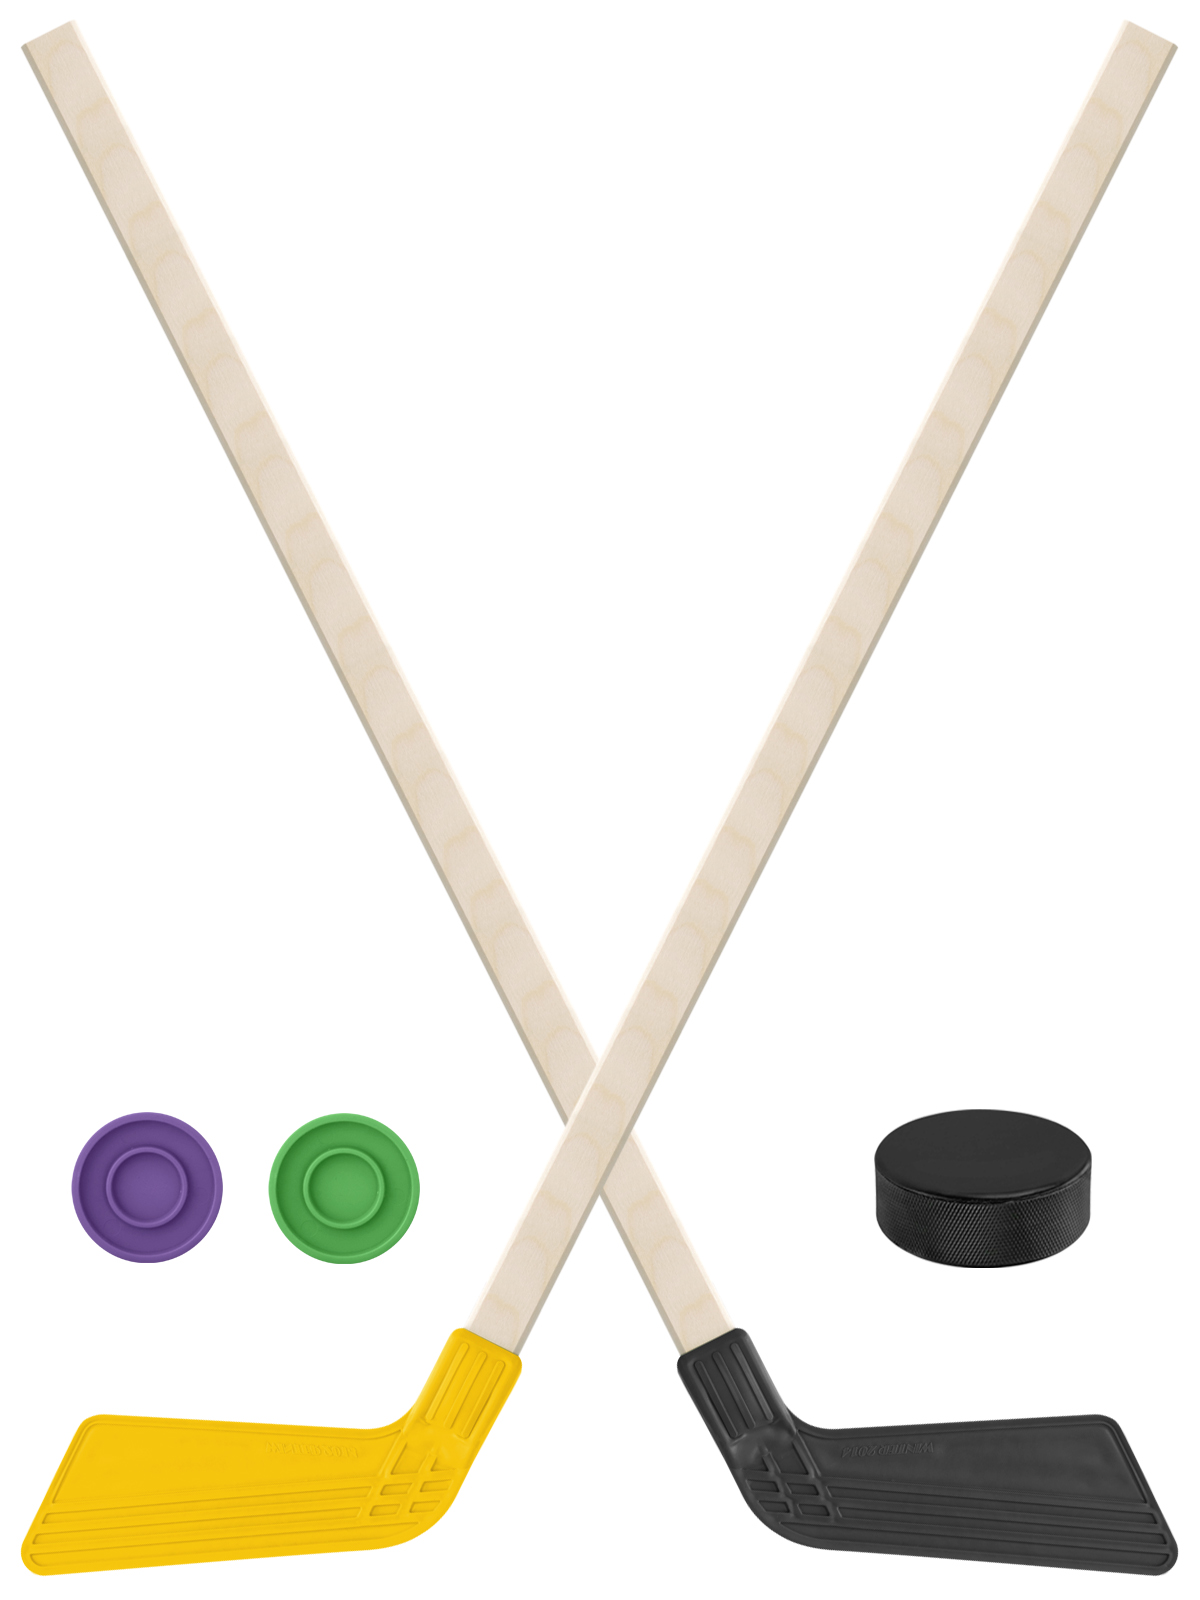 Детский хоккейный набор Задира-плюс Клюшка хоккейная 80см 2шт(жёлт,чёрн)+2шайбы+Шайба75 мм клюшка флорбольная acito mini 35 orange 65 round прямой 3006 003